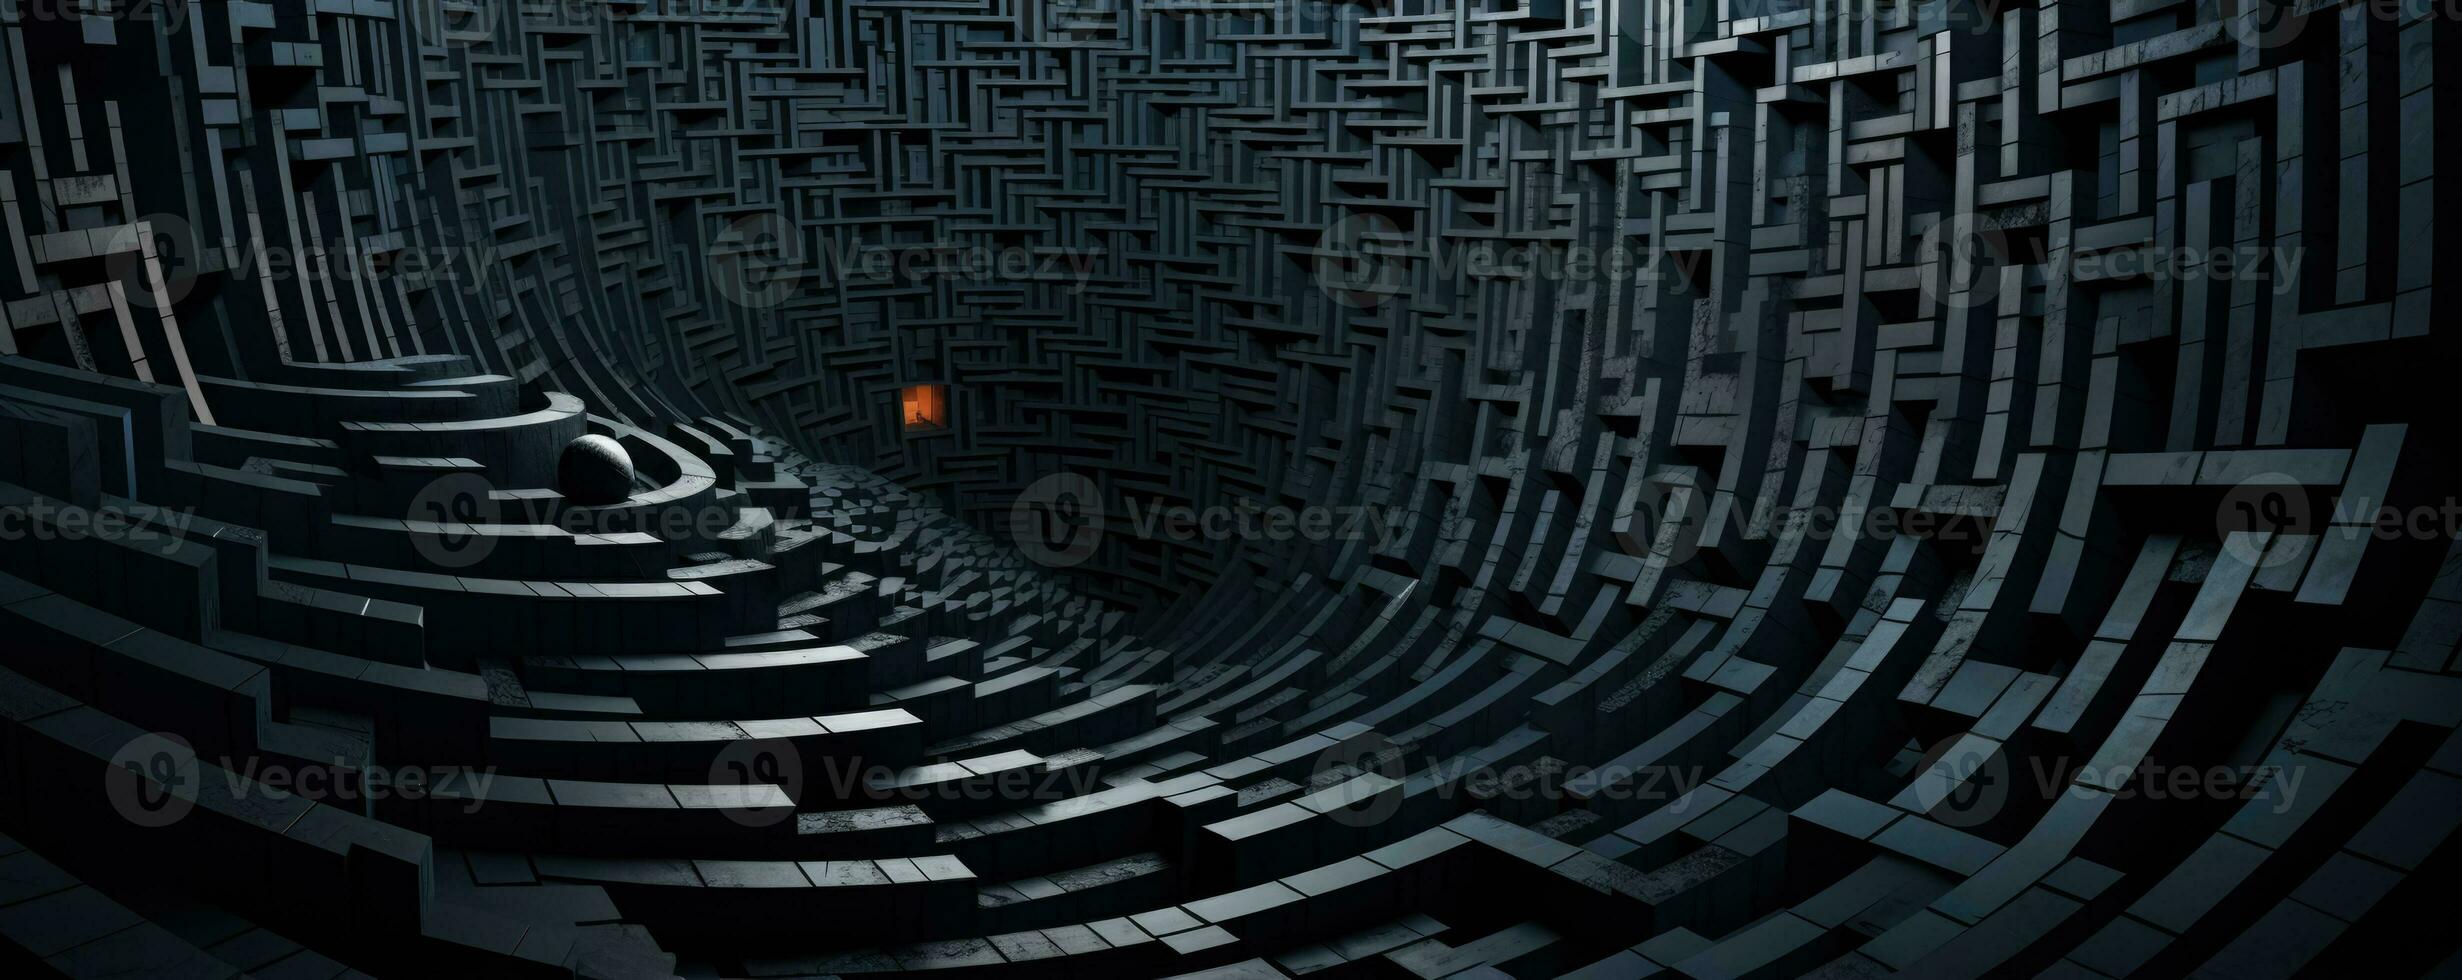 tordu fractale labyrinthes en spirale dans absurdement complexe encore captivant dimensions photo